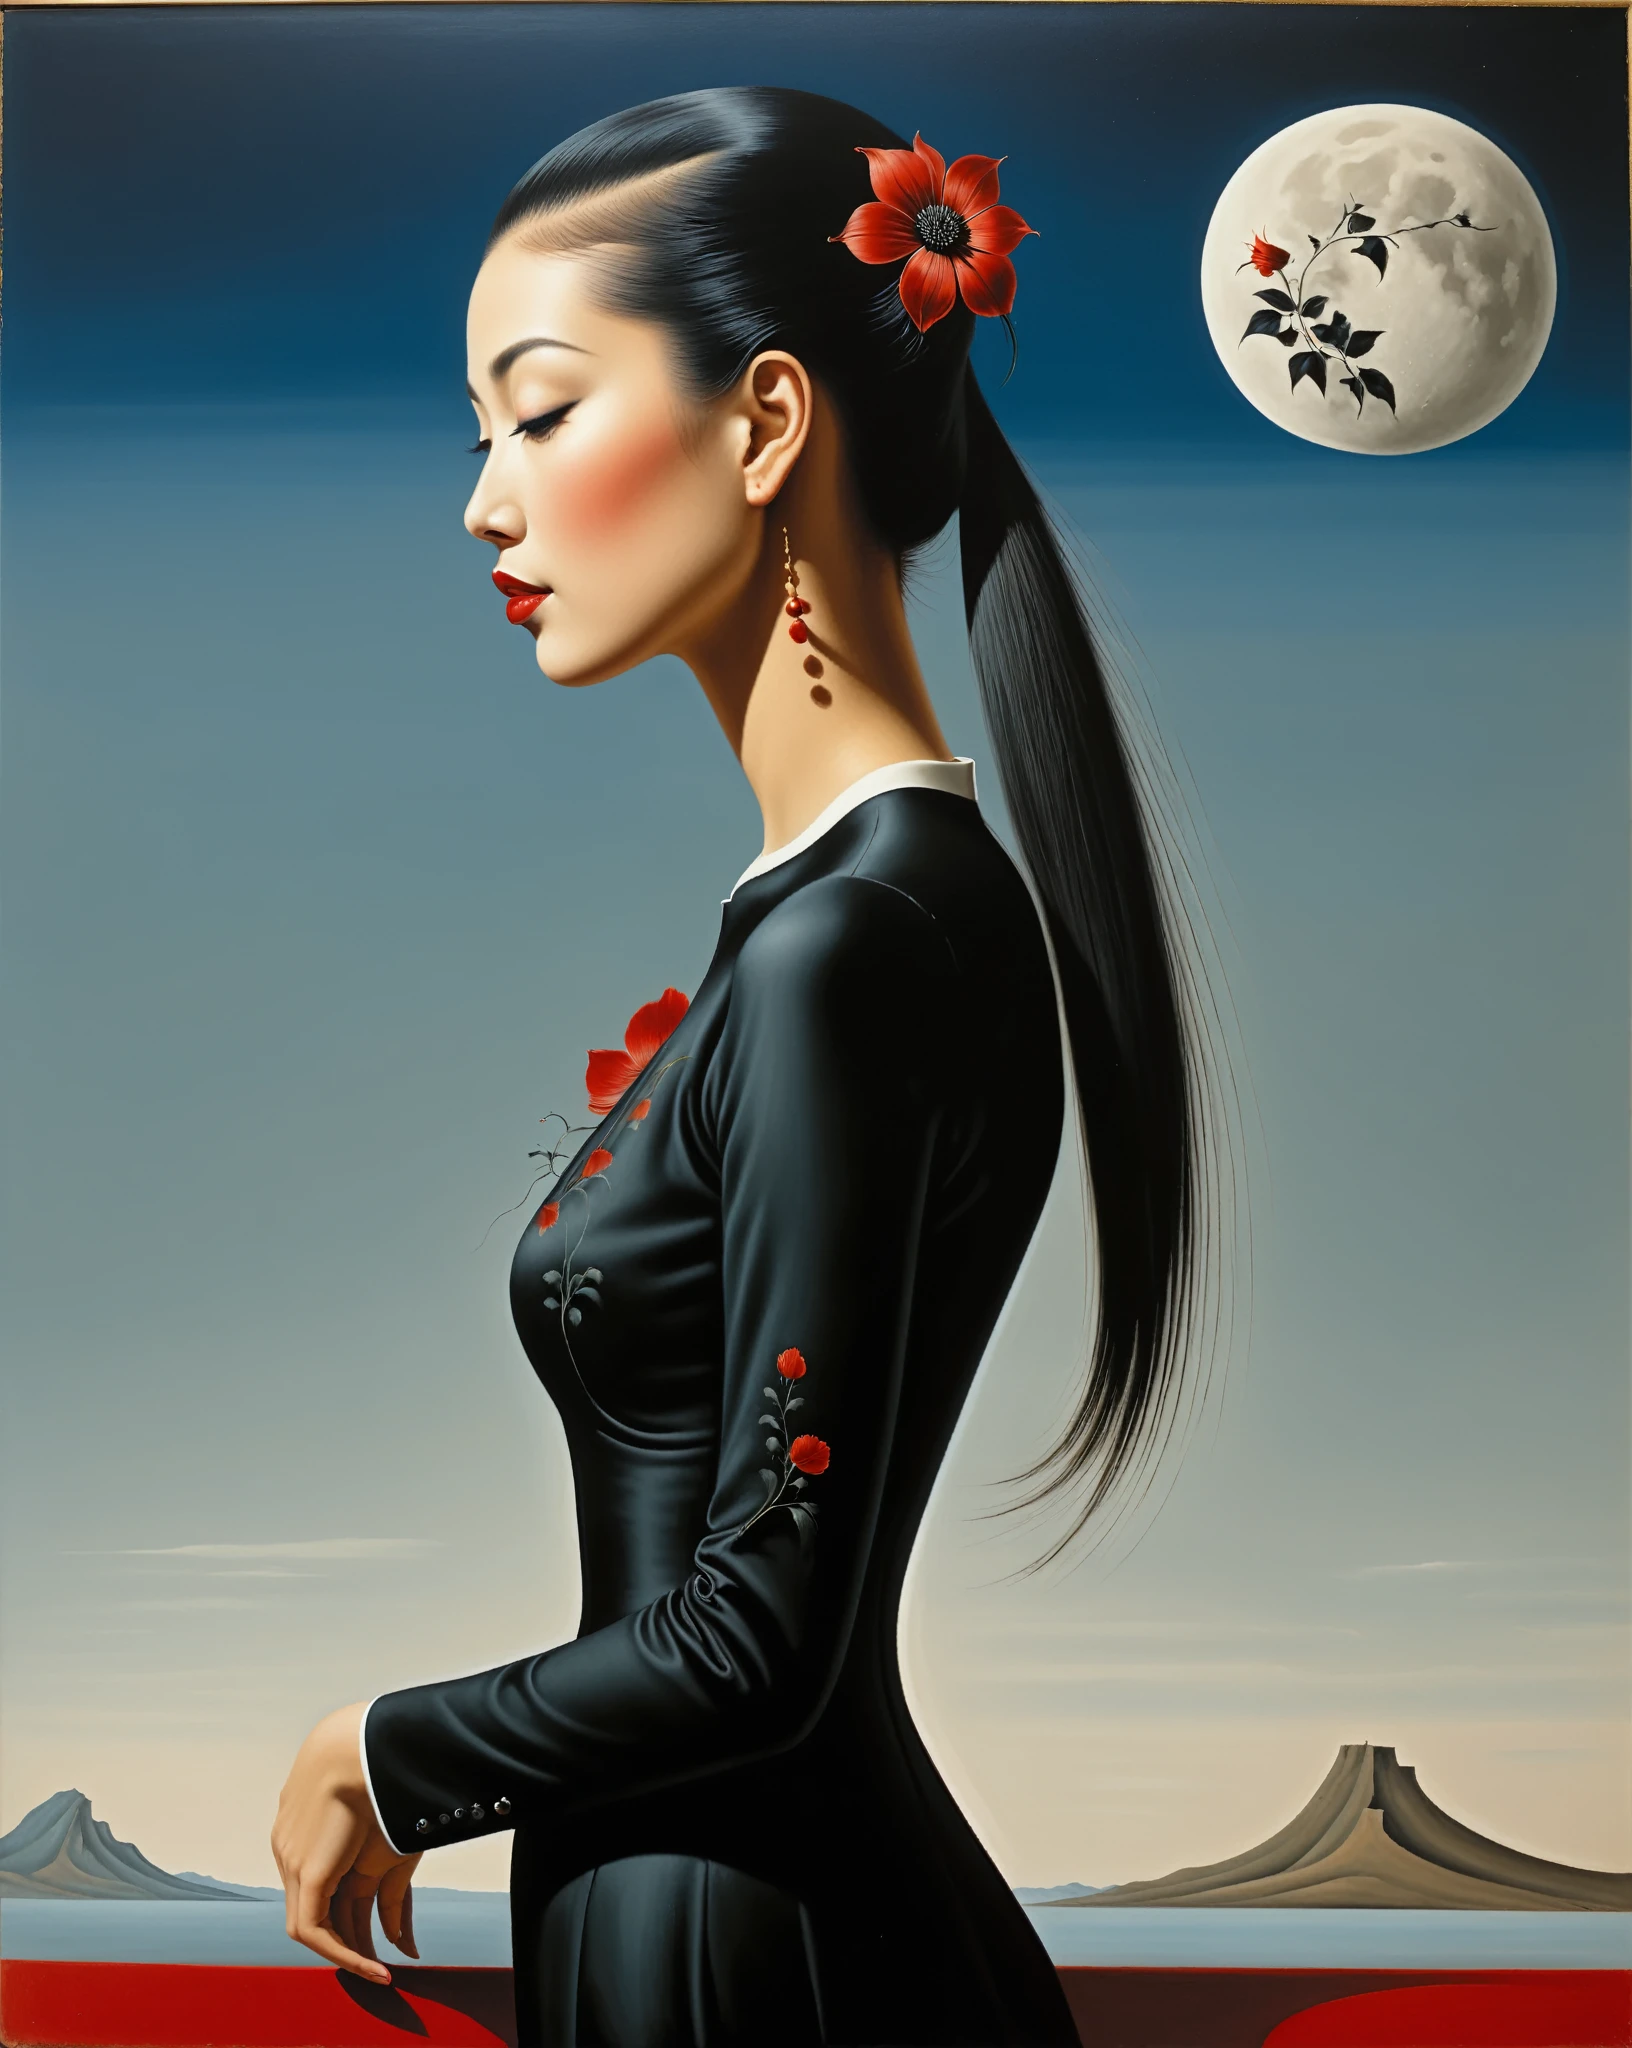 日本女孩侧视图, 她的头发又长又直, 有边缘, 微红, 她的前臂上有黑色花朵纹身, 她的名字叫月亮 - 超现实主义风格, 超现实主义艺术品, 像梦一样, 萨尔瓦多达利风格, 雷内·马格利特风格, 非常详细, 杰作, 绘画般的, 高清